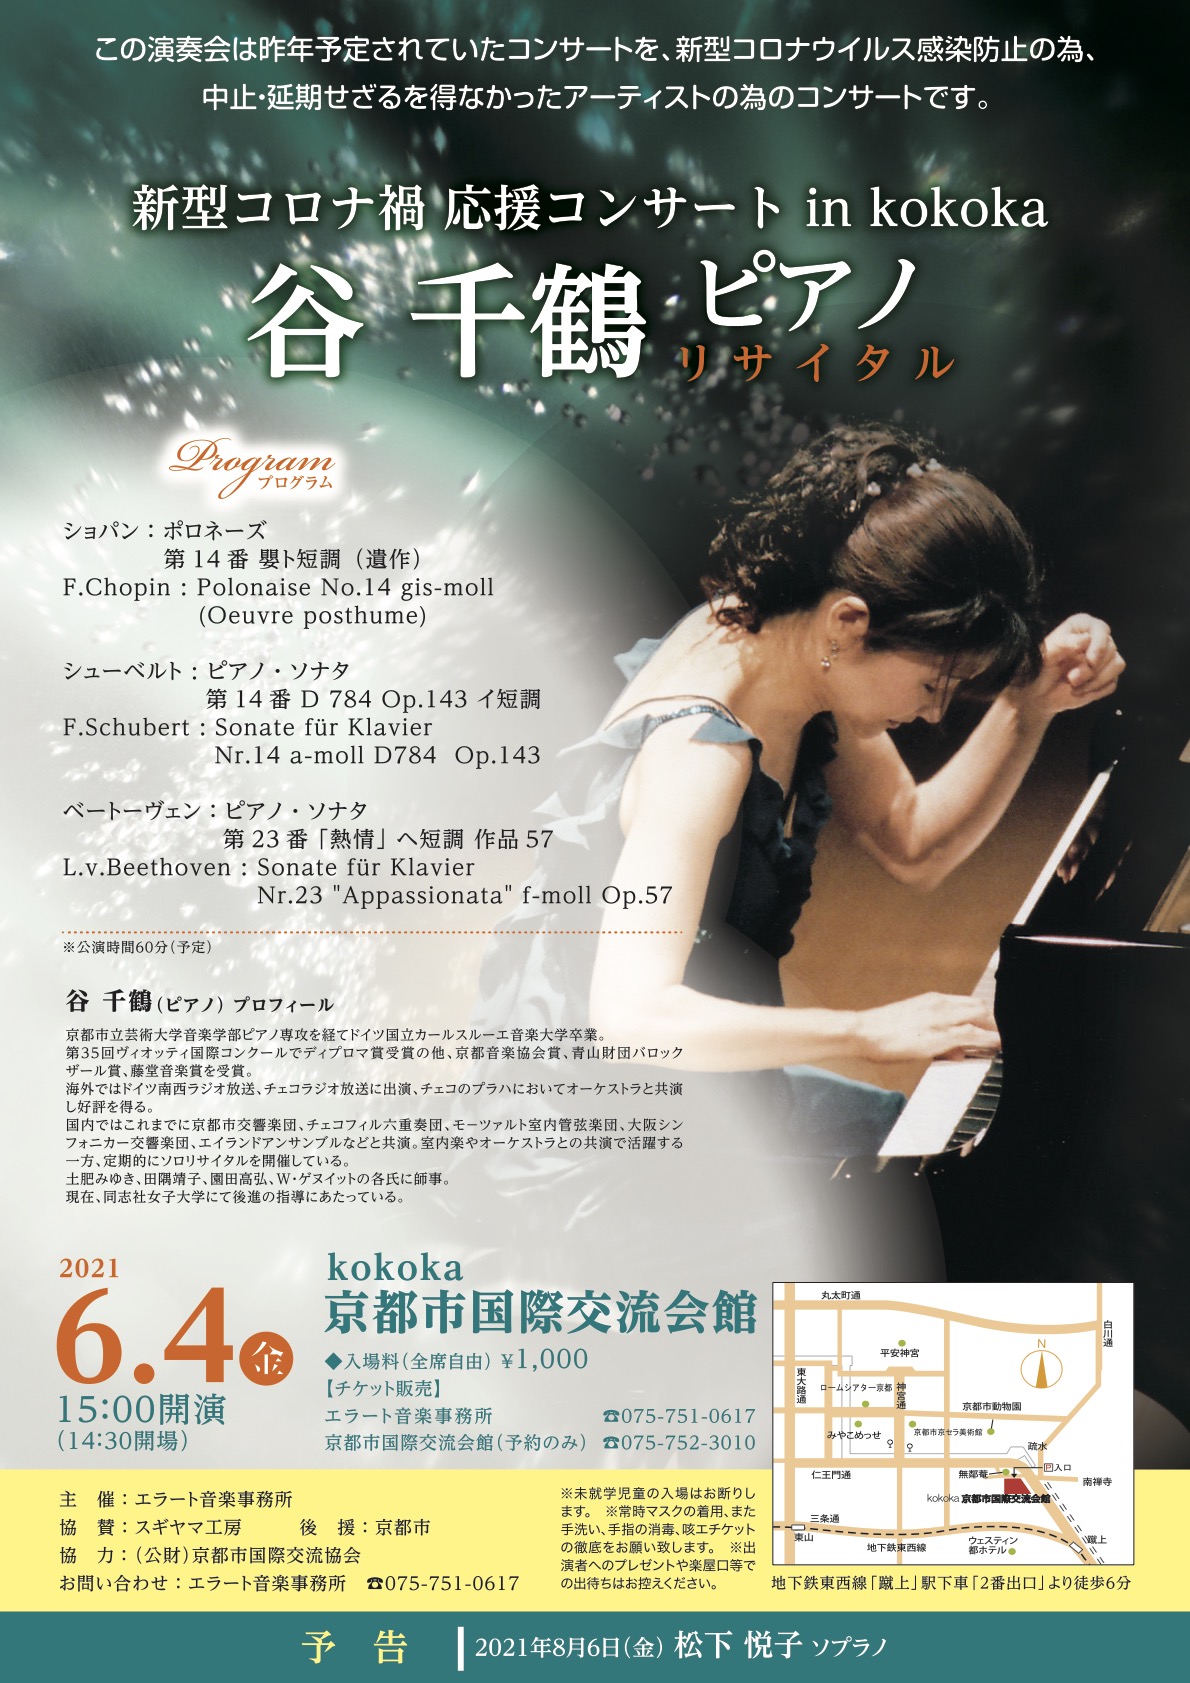 谷 千鶴 ピアノリサイタル 新型コロナ禍 応援コンサート in kokoka | エラート音楽事務所 公式ページ